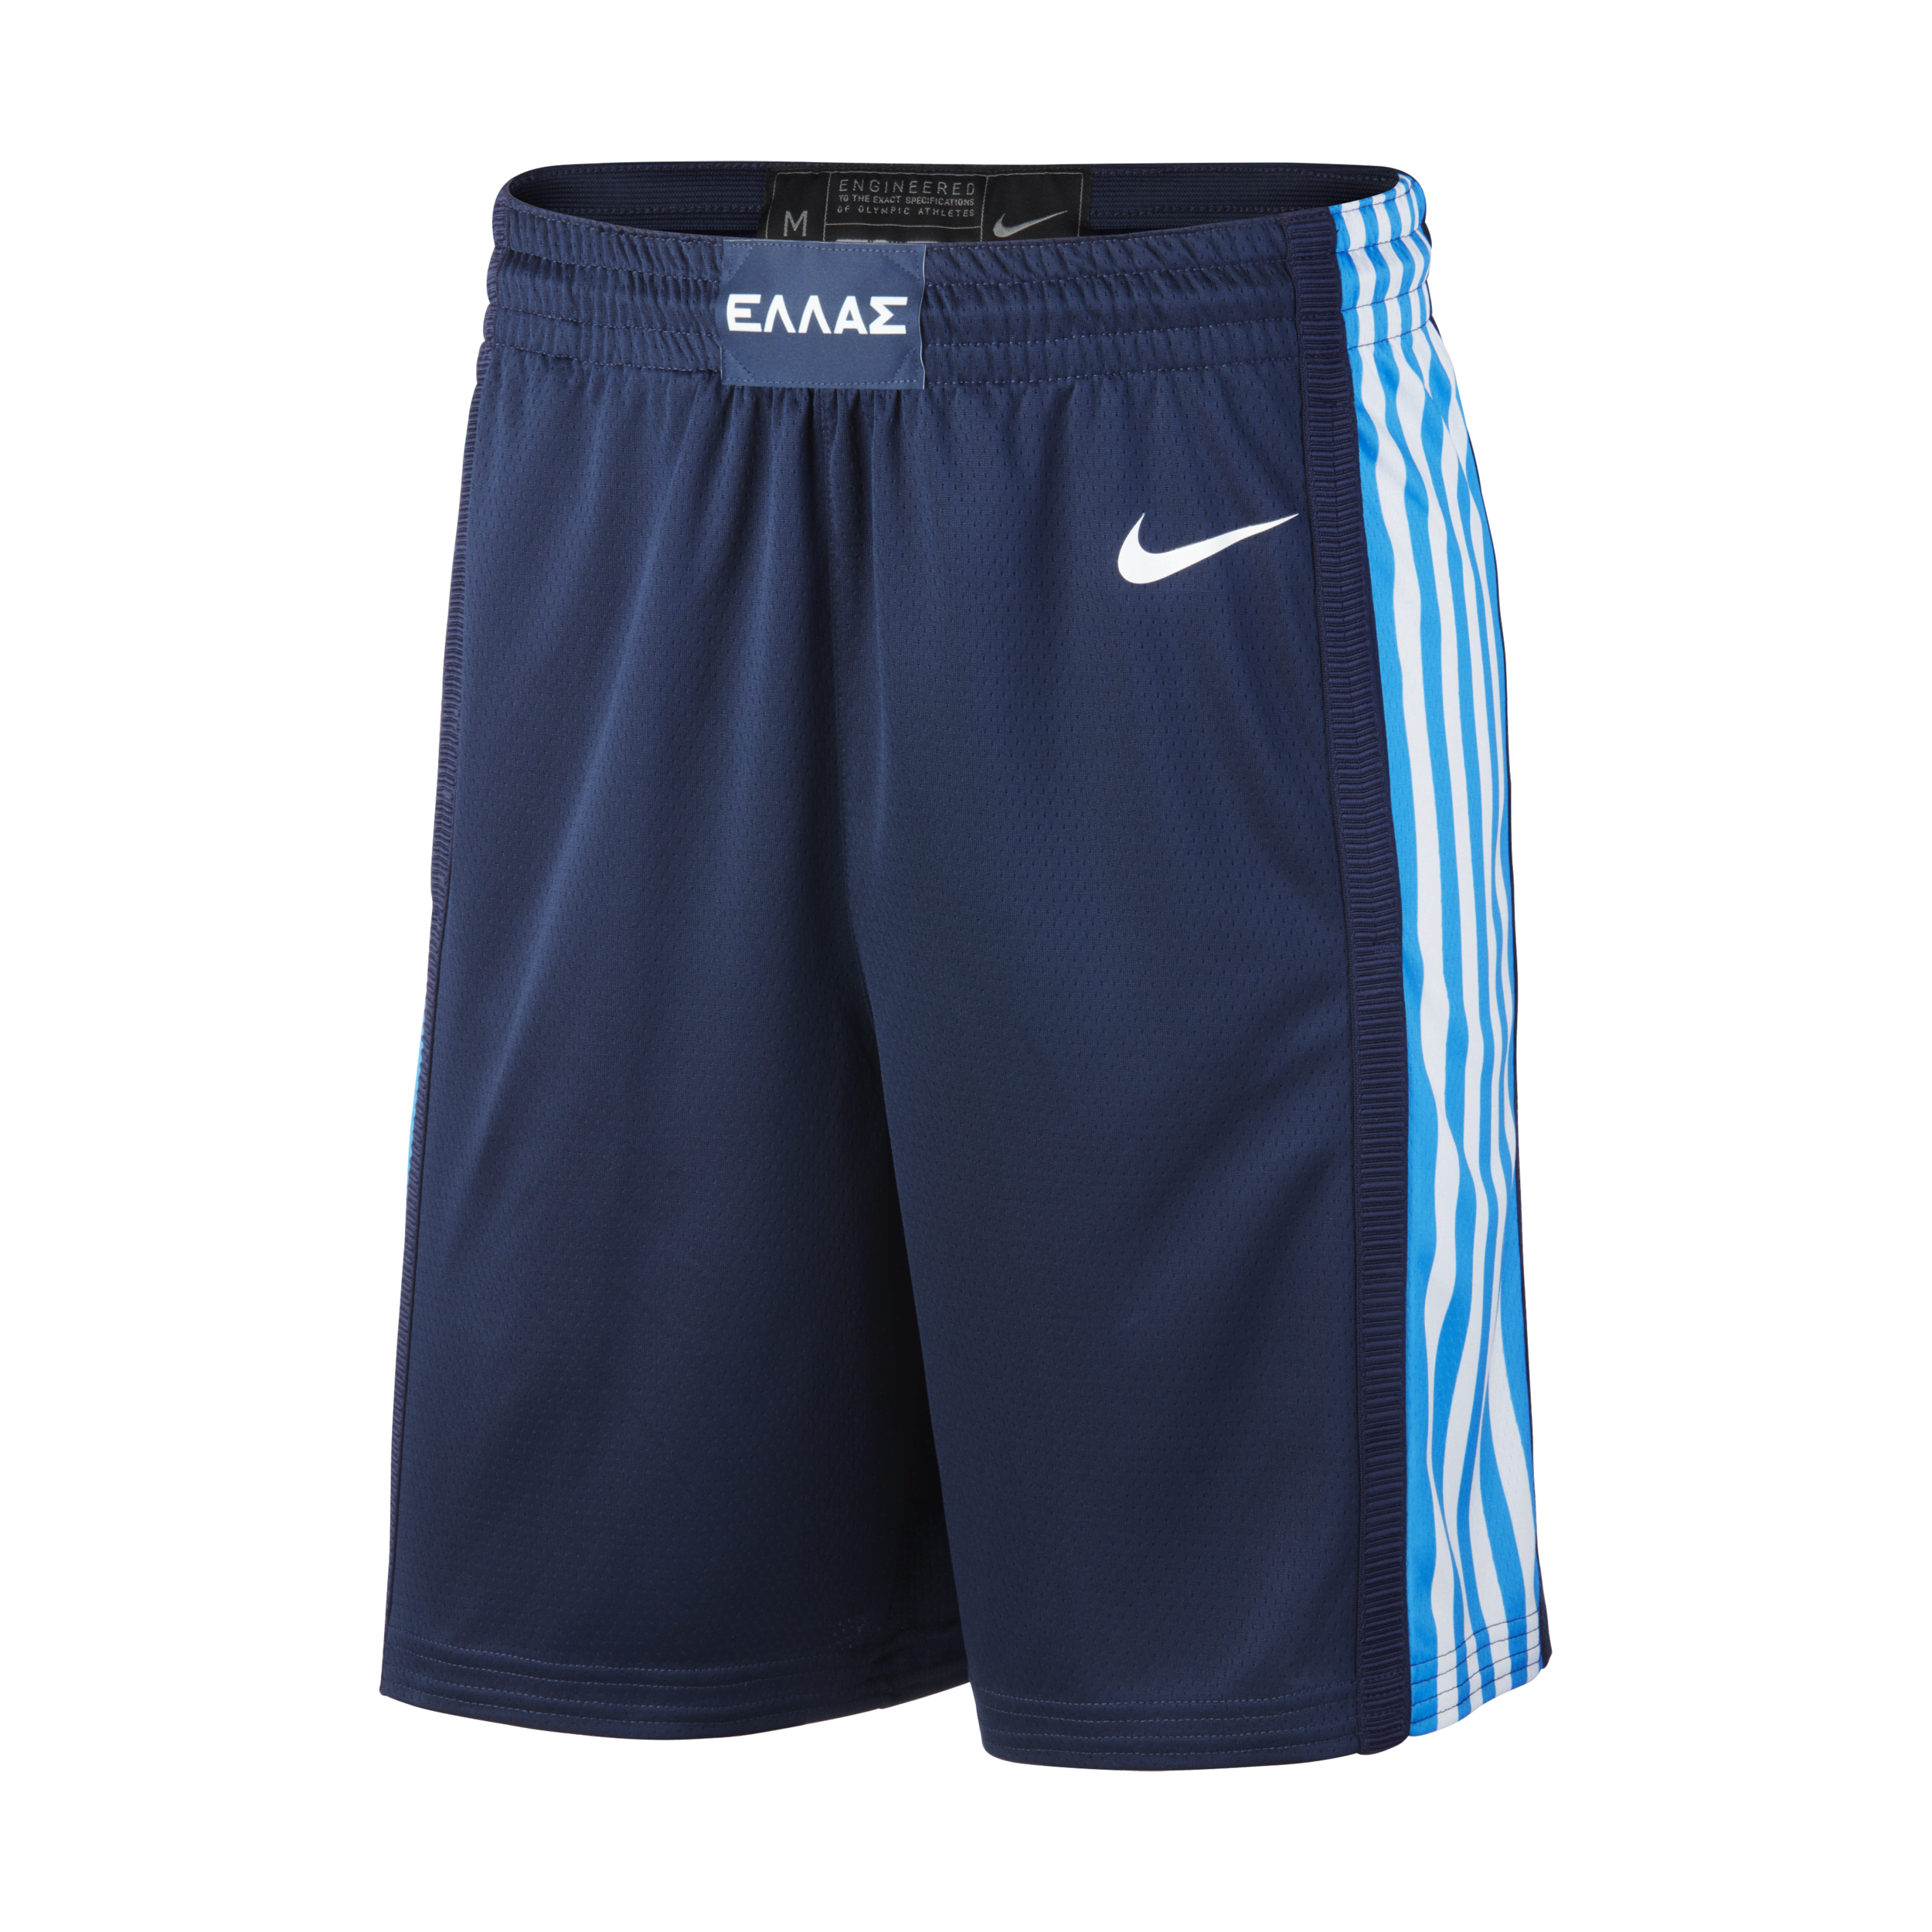 Image of Griekenland Nike (Road) Limited Basketbalshorts voor heren - Blauw